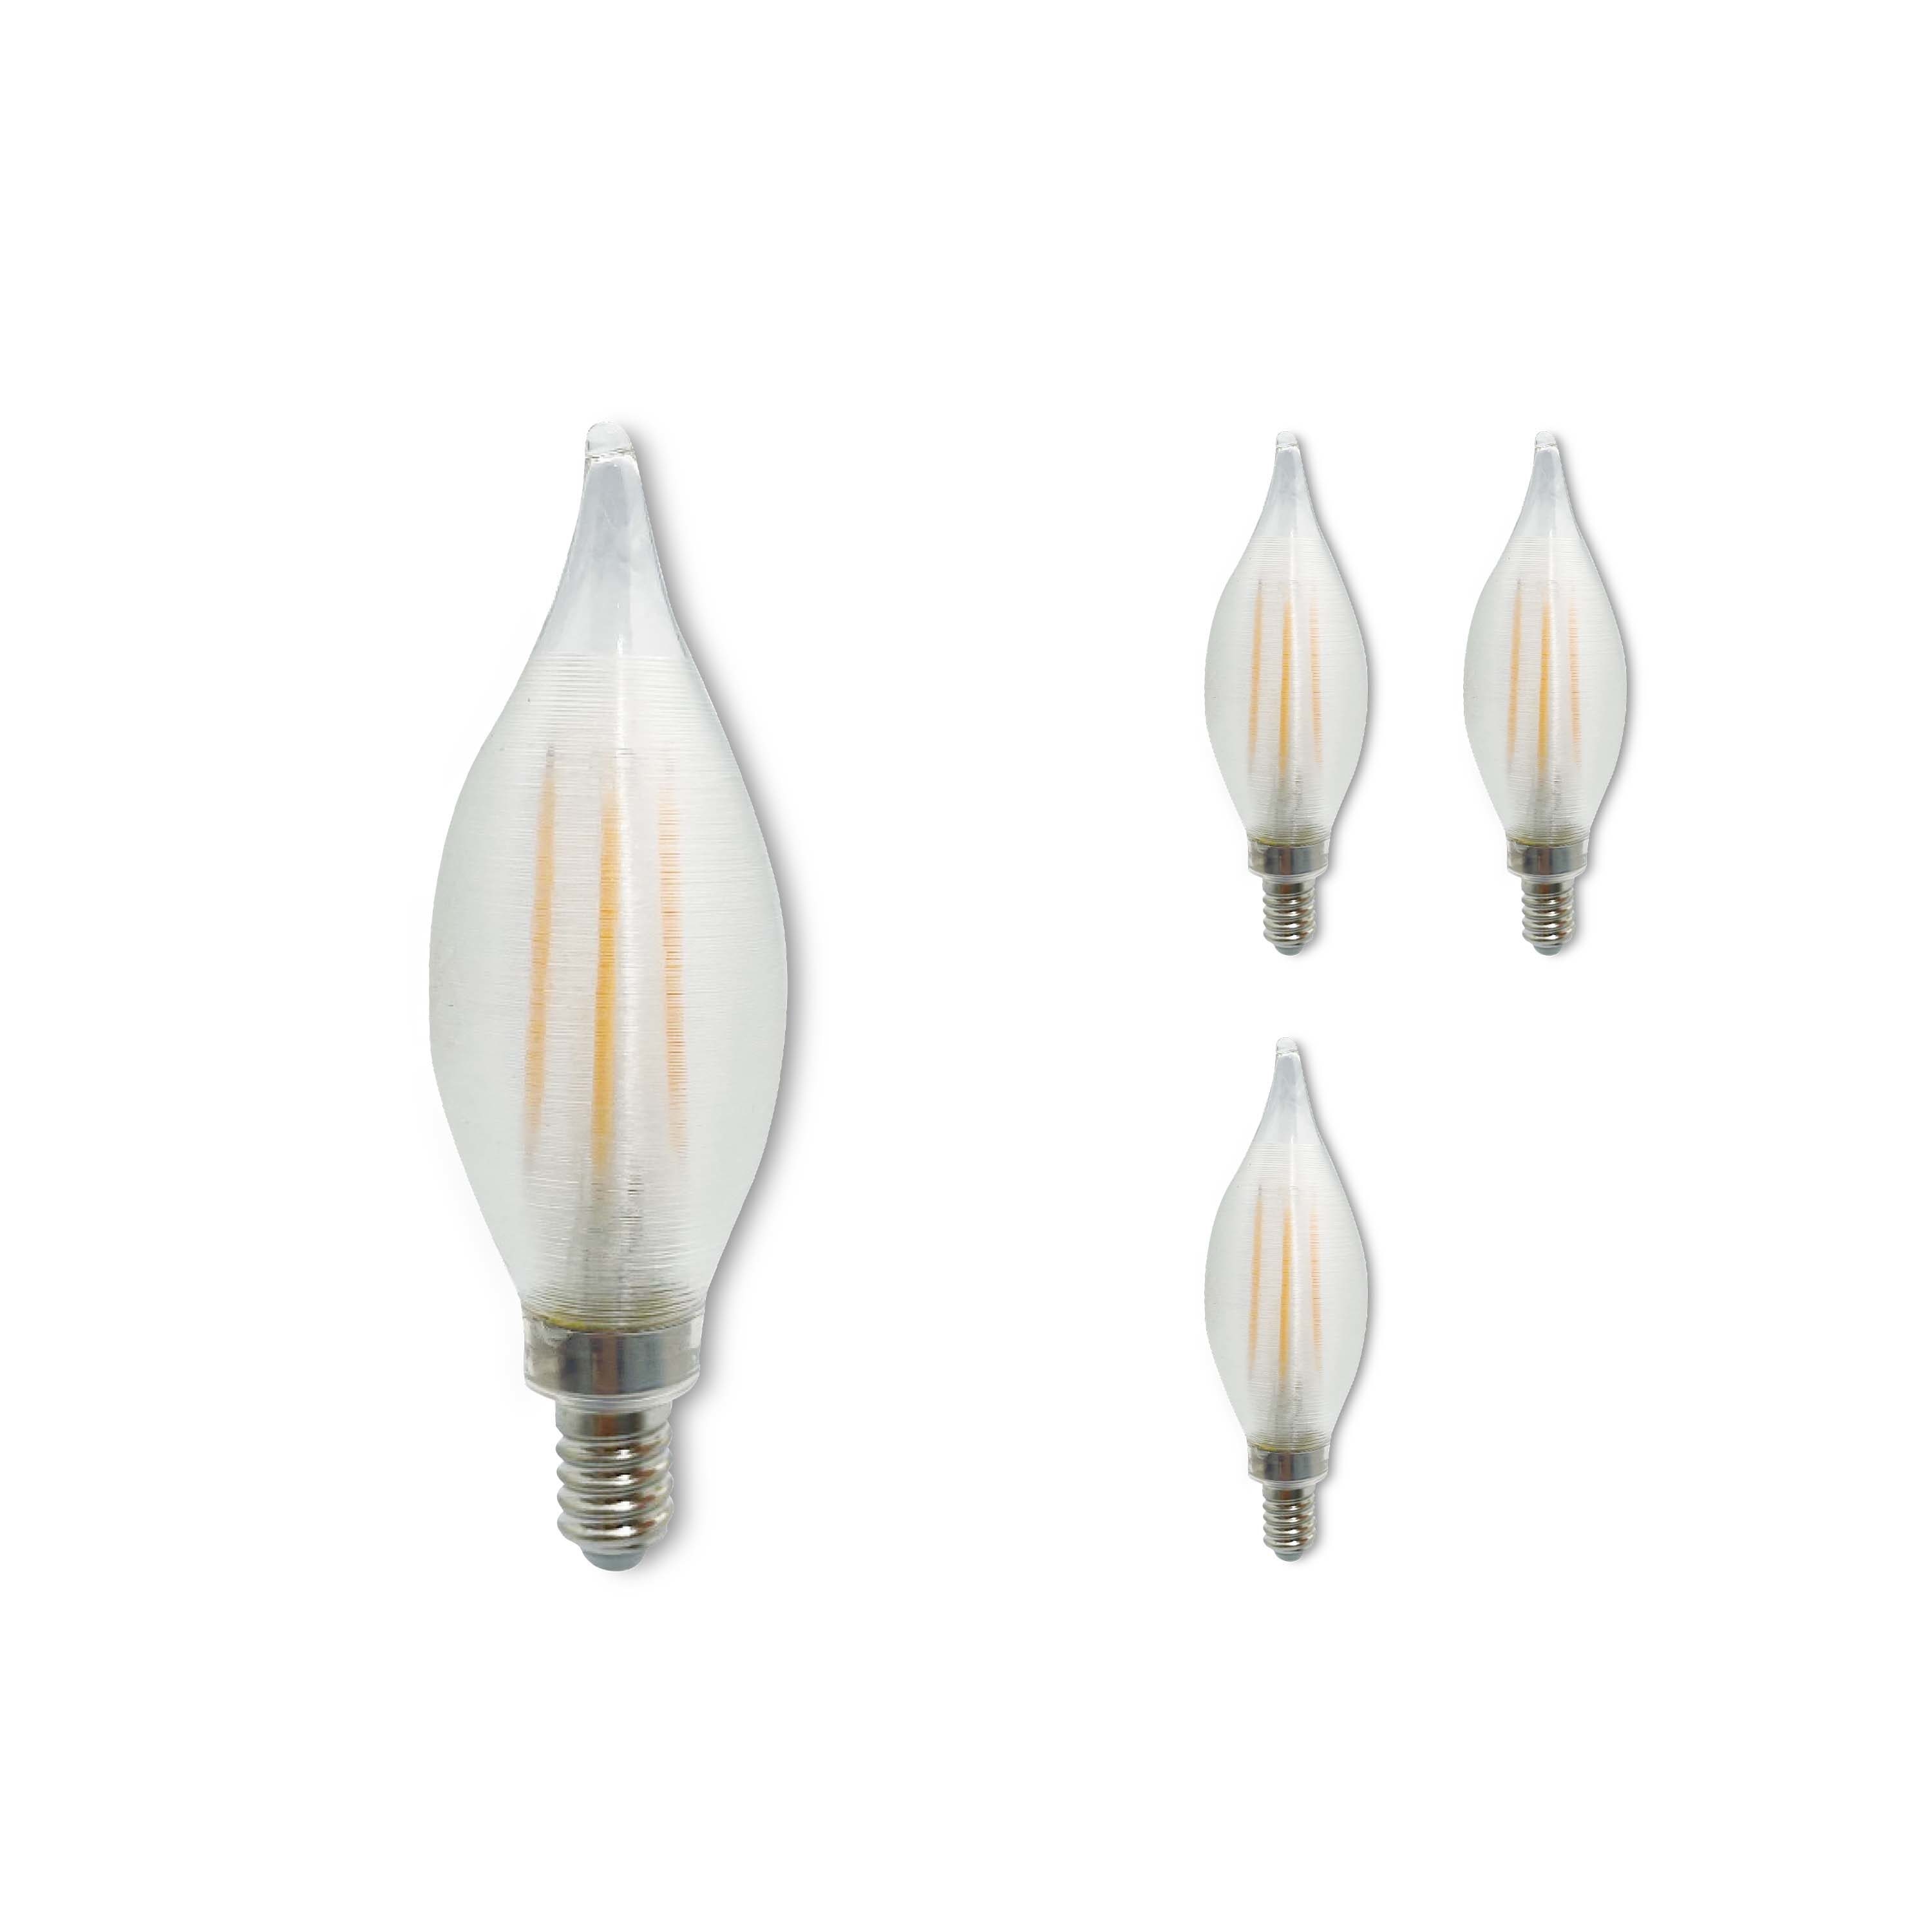 Tubular E14 satin white LED light bulb